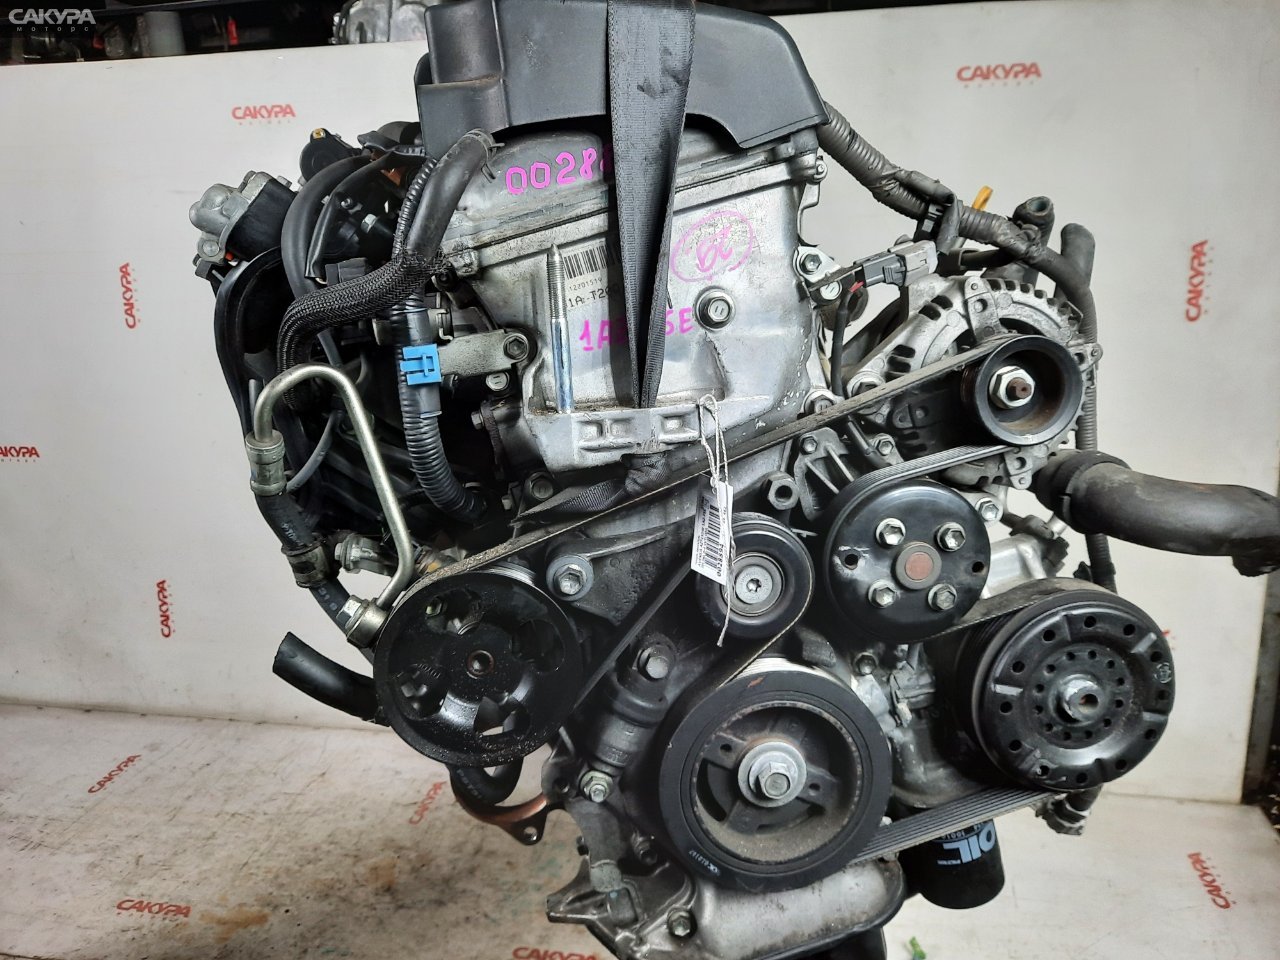 Двигатель Toyota Avensis AZT250 1AZ-FSE: купить в Сакура Красноярск.